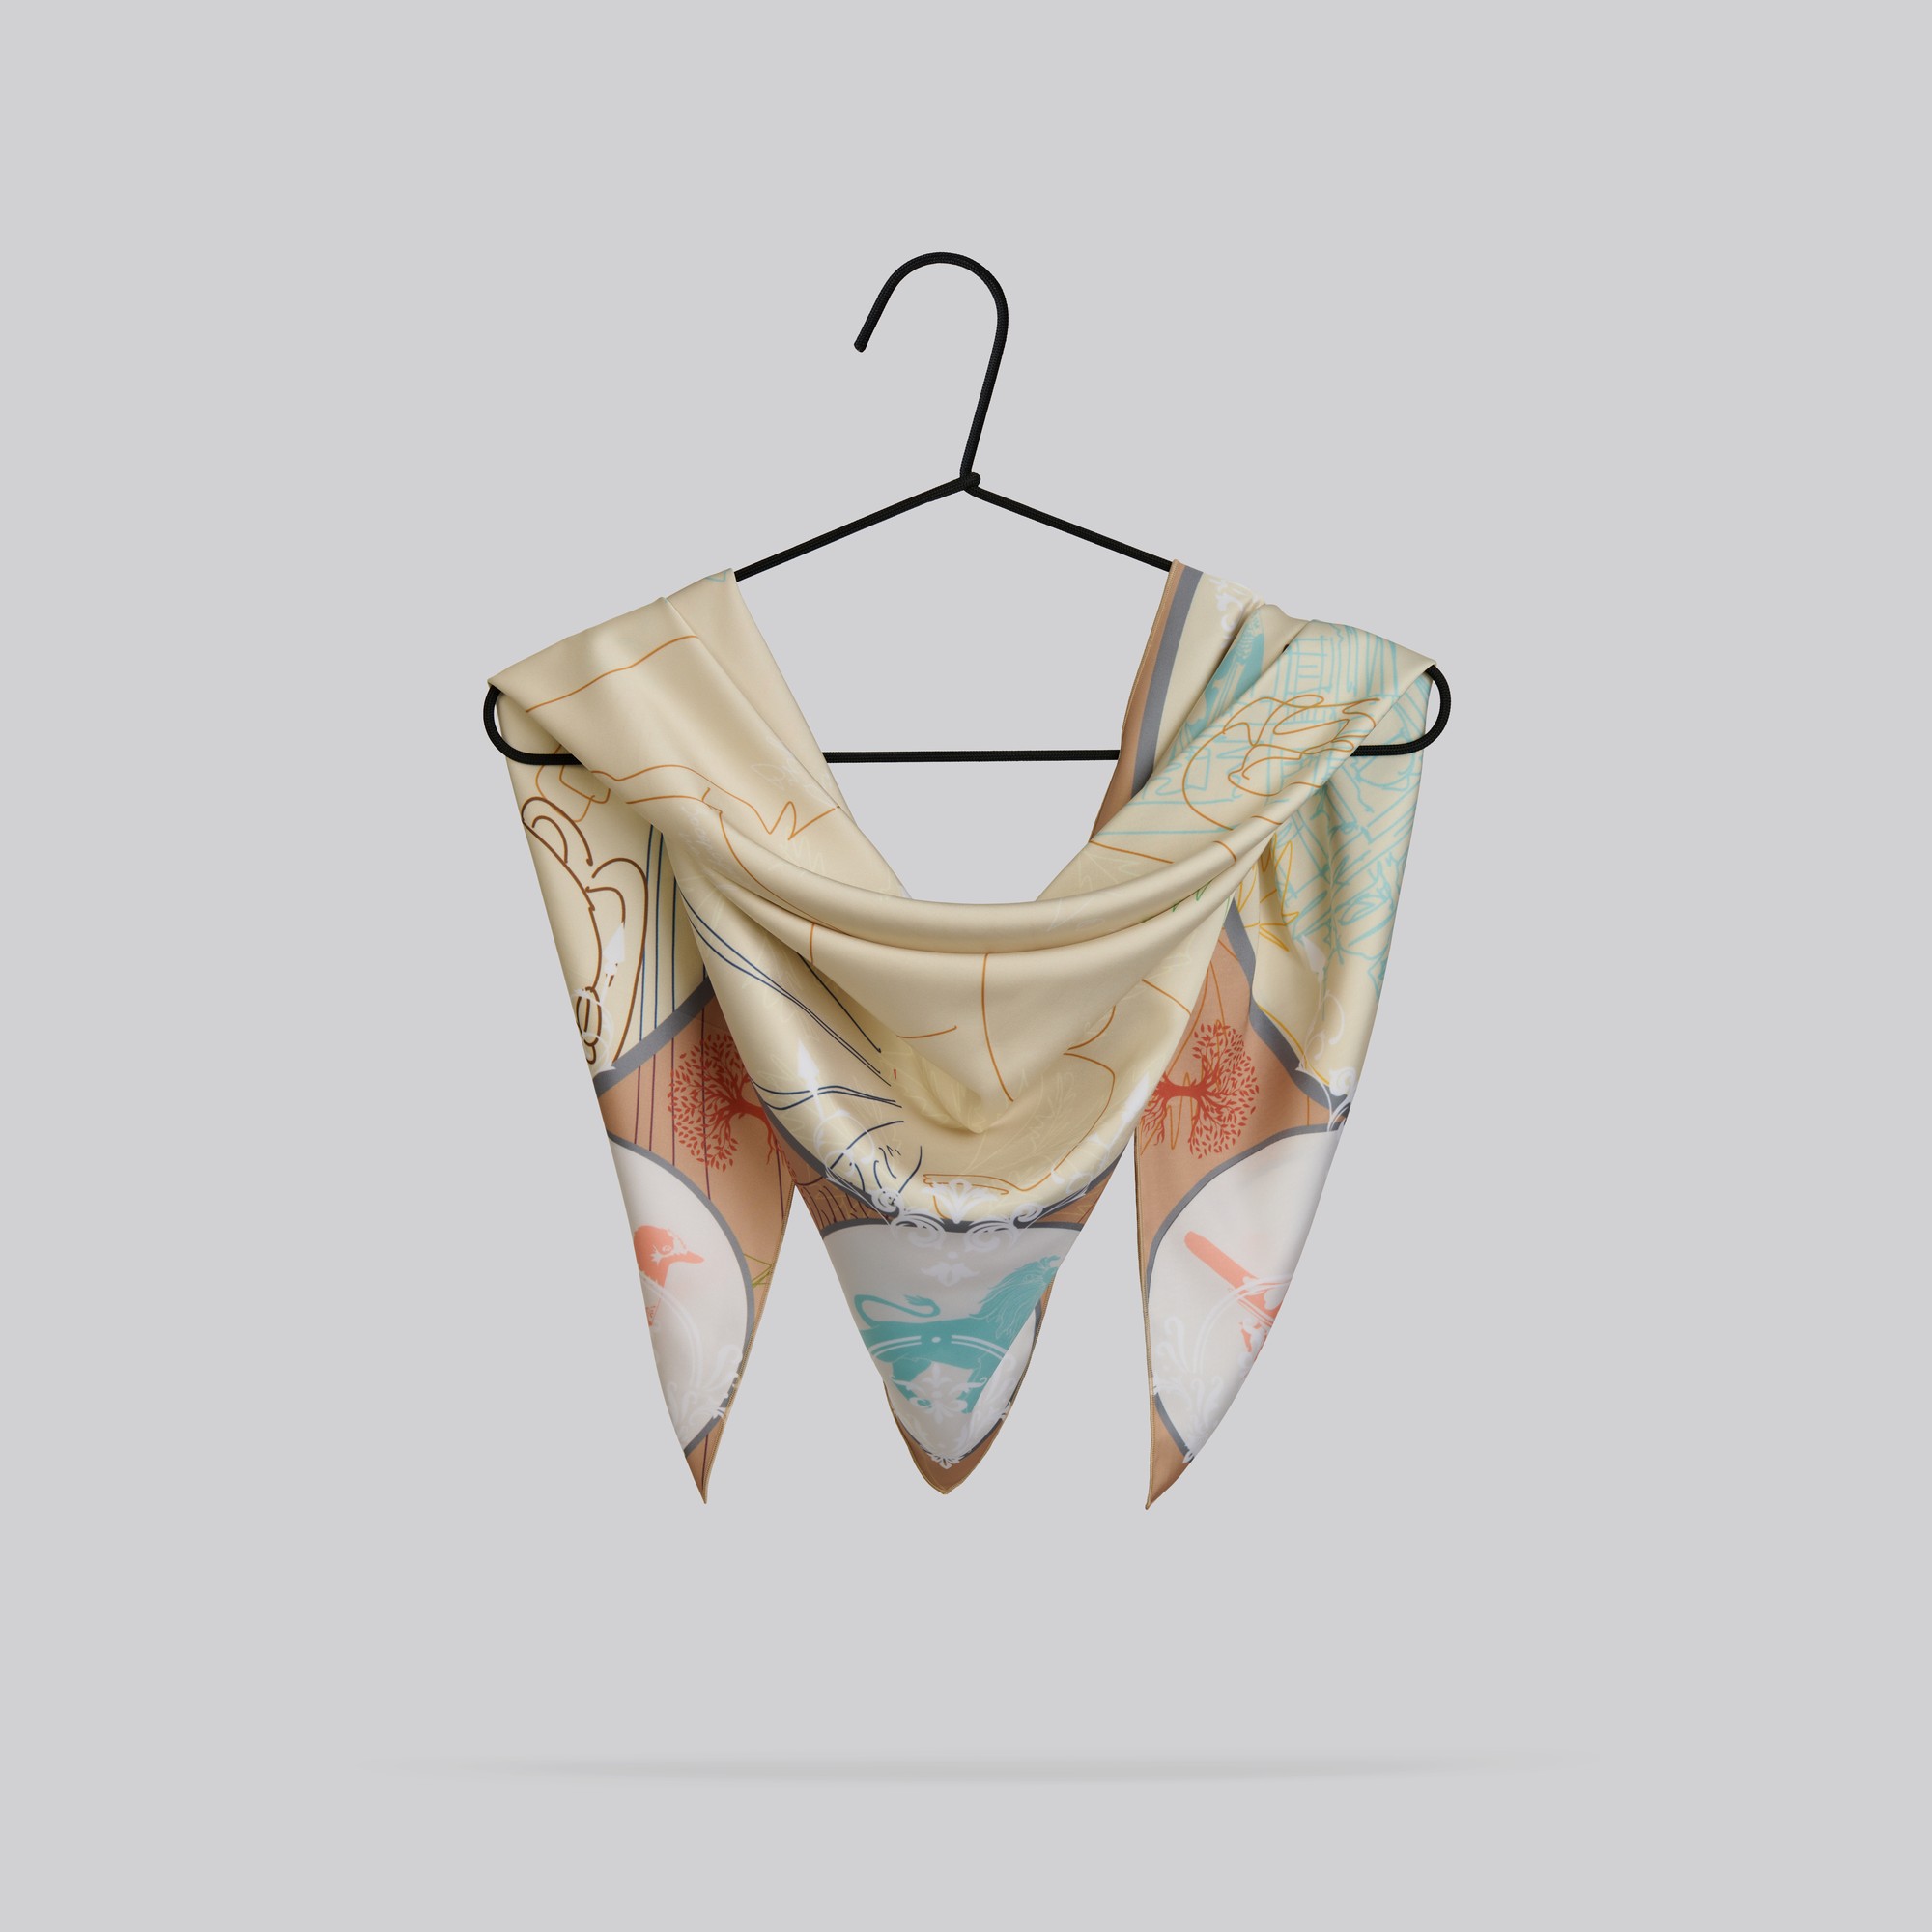 Scarf "Lviv" Size 57*57 cm silk shawl from Ukraine